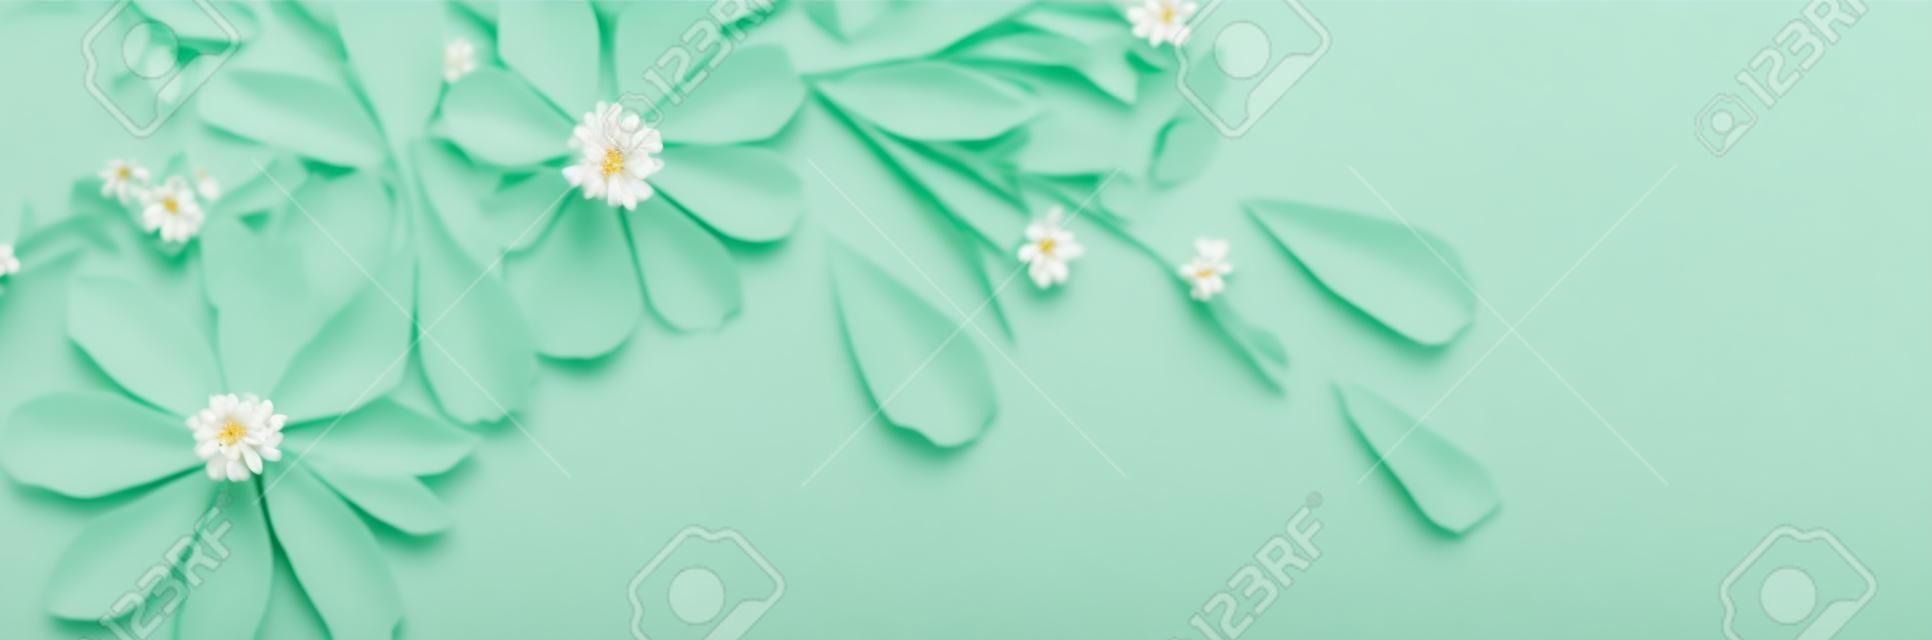 緑の紙の背景に白い花